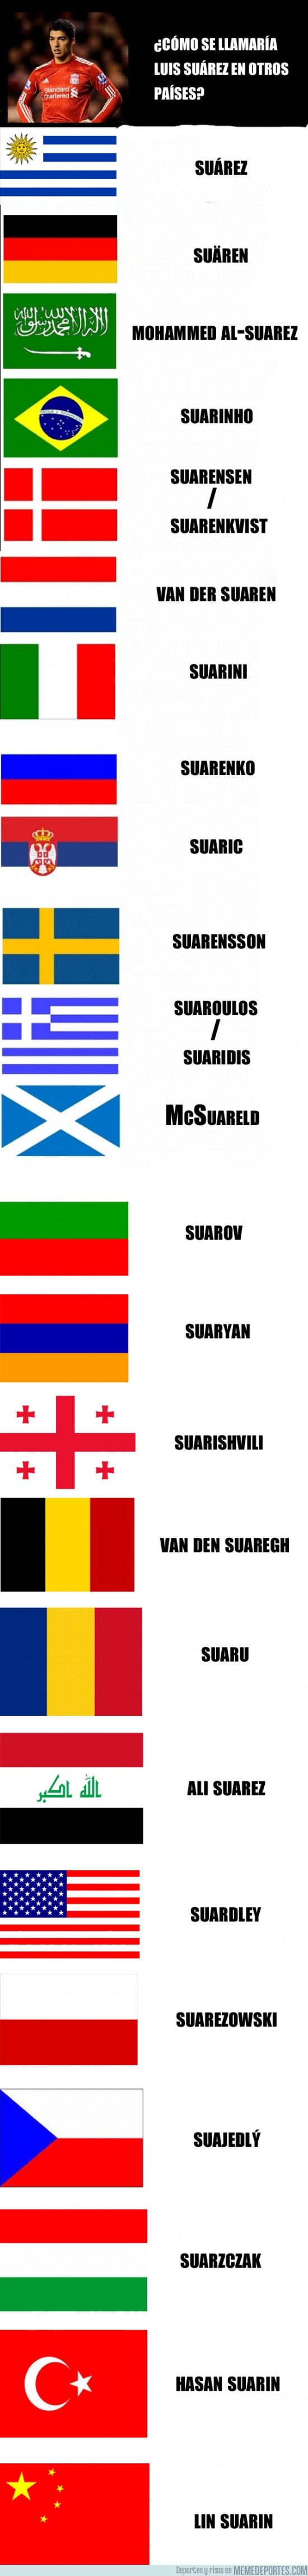 154167 - Suárez en diferentes países